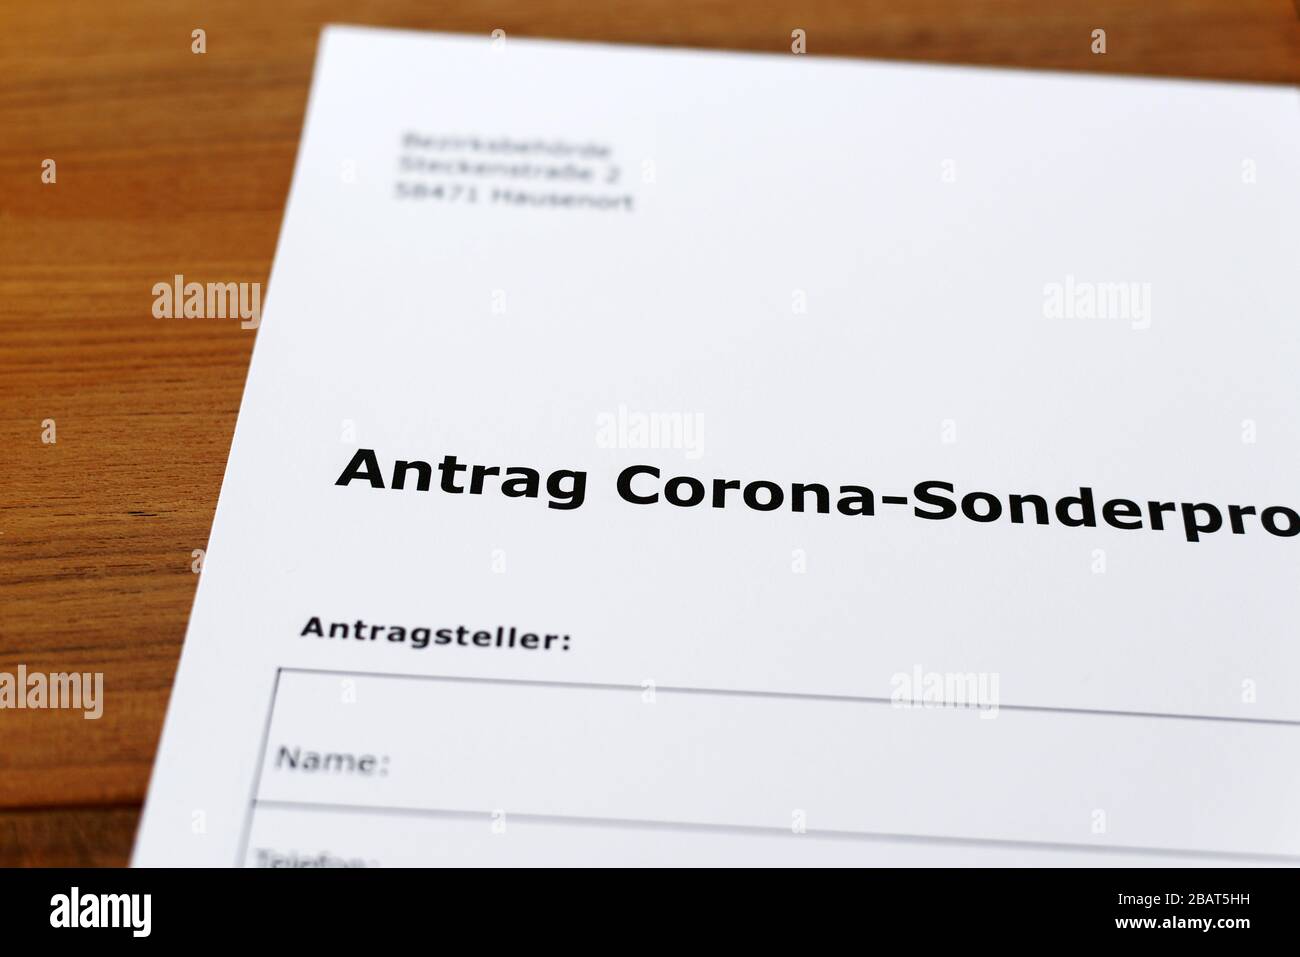 Una hoja de papel con las palabras alemanas 'Antrag Corona-Sonderprogramm' - Traducción en englisch: Aplicación Corona programa especial Foto de stock